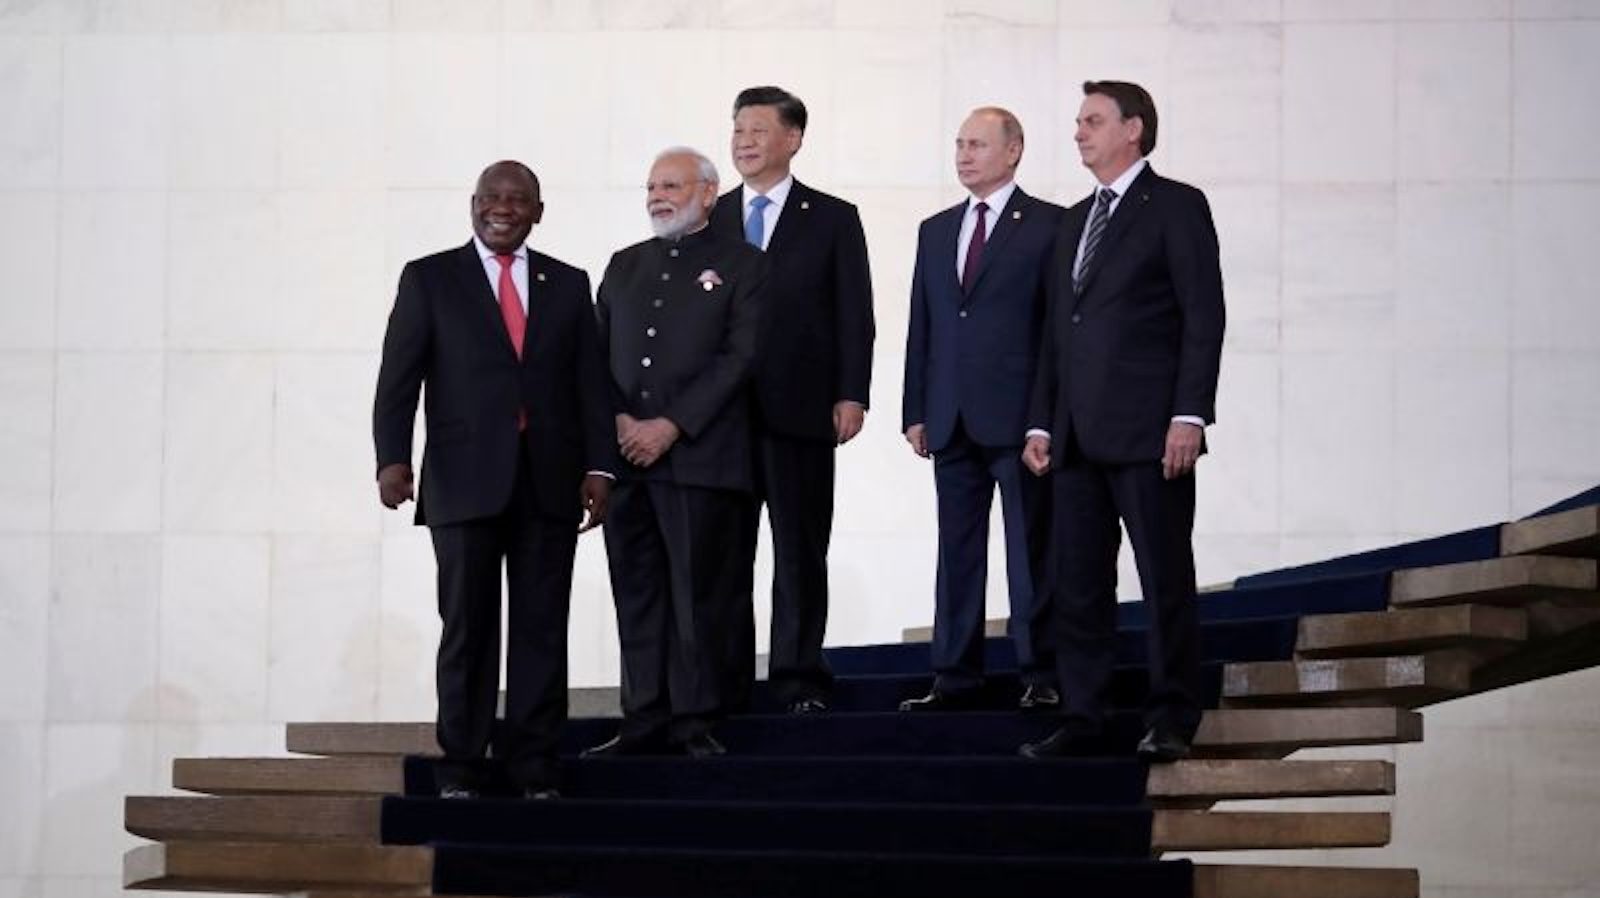 Decenas de países claman por unirse al grupo BRICS, dice Sudáfrica, mientras Rusia asume el liderazgo del bloque económico